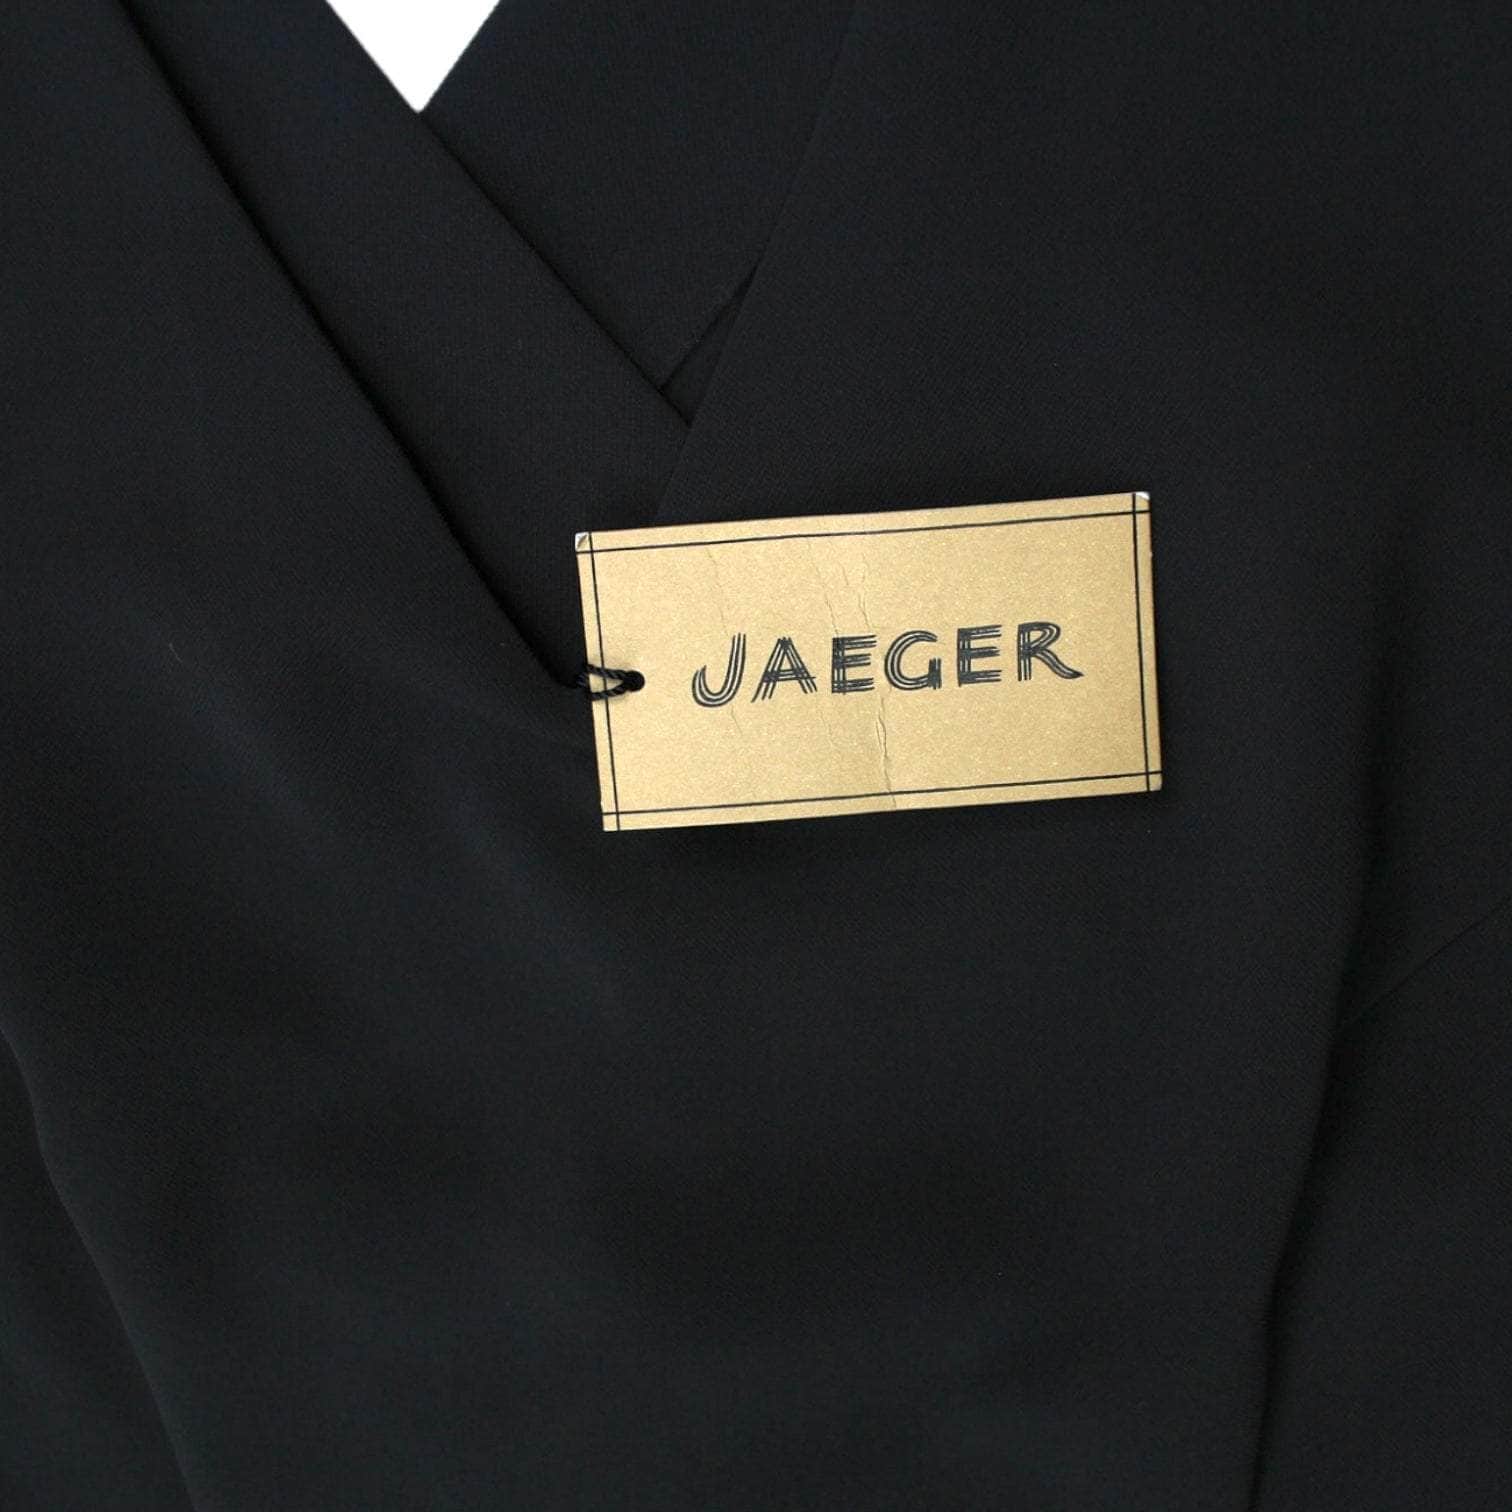 Jaeger Black V-neck Sleeveless Blouse